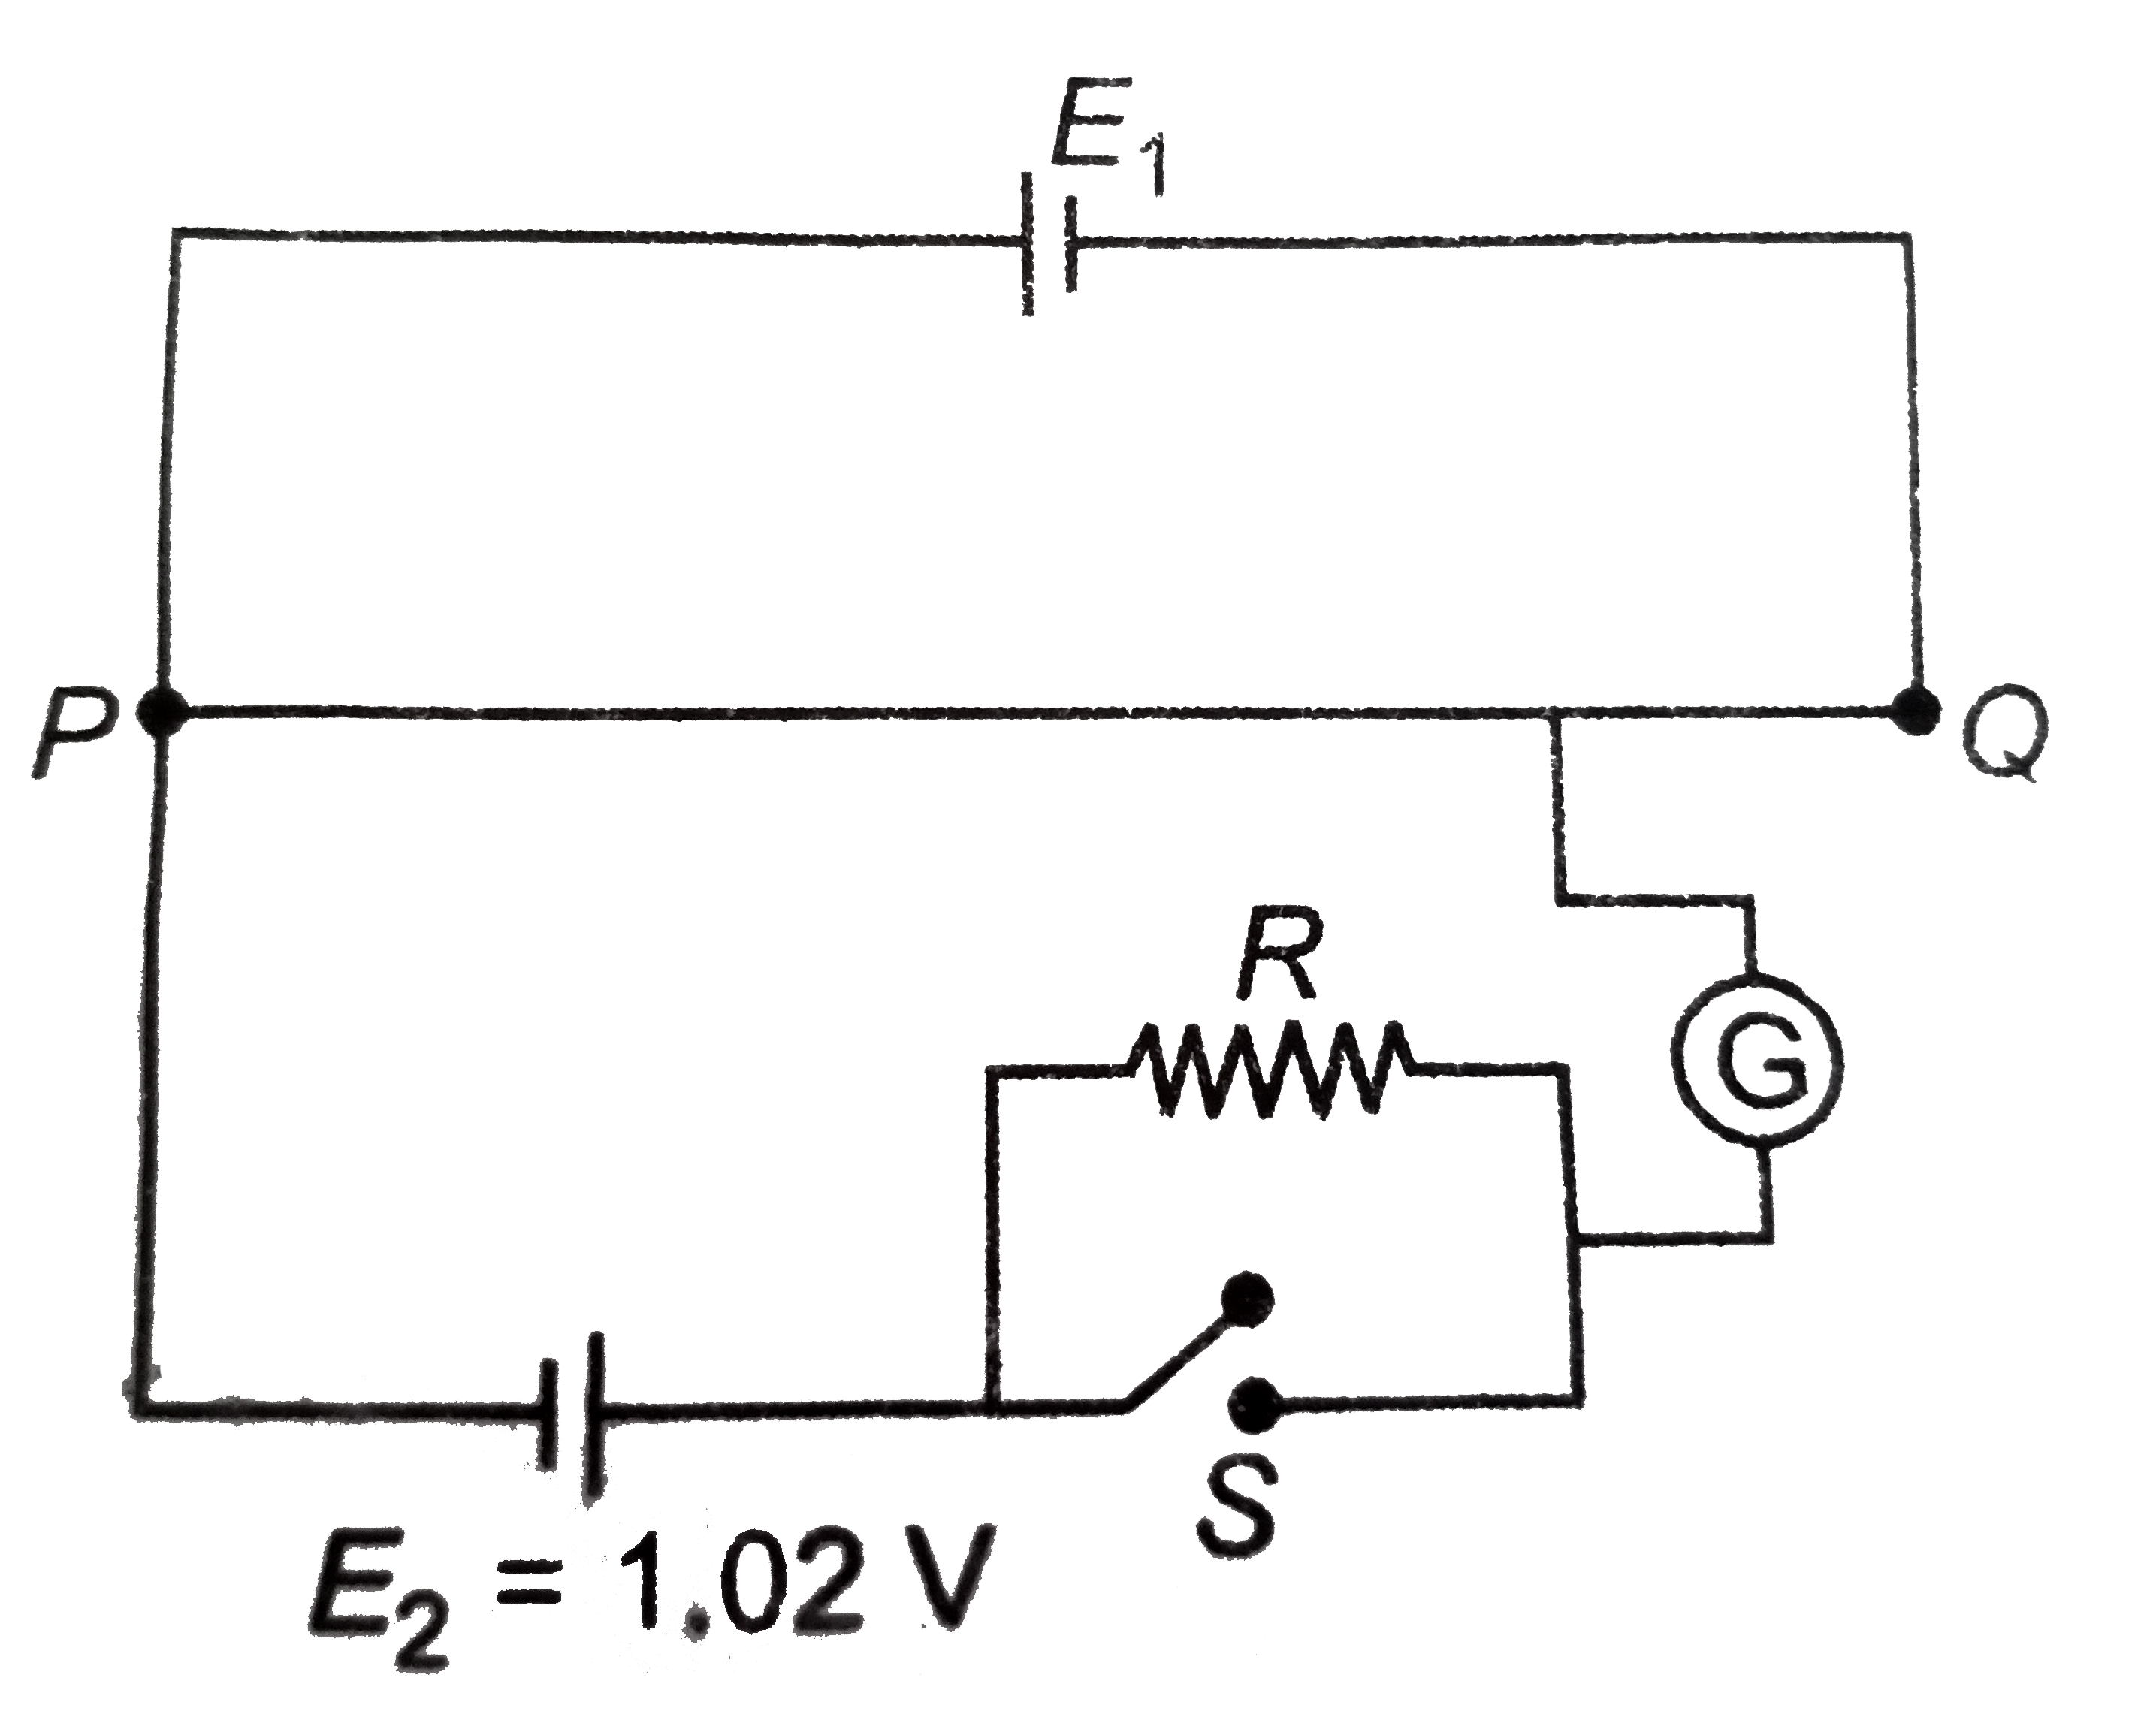 एक विभवमापी का 1 मीटर लम्बा तार PQ एक प्रामाणिक सेल E(1) से जोड़ गया। एक अन्य सेल E(2) जिसका विद्युत वाहक बल (emf) 1.02 वोल्ट है, दिए गए परिपथ चित्र में प्रतिरोध R तथा स्विच S से जोड़ी जाती है। जब स्विच S खुला है तब अविक्षेप बिंदु P से 51 सेमि की दूरी पर प्राप्त होता है। ज्ञात कीजिए (i) विभवमापी तार की विभव प्रवणता, (ii) सेल E(1) का विद्युत वाहक बल (emf), (iii) जब स्विच S को बंद किया जाता है तब अविक्षेप बिंदु P अथवा Q की और विस्थापित होगा। कारण सहित समझाइए।